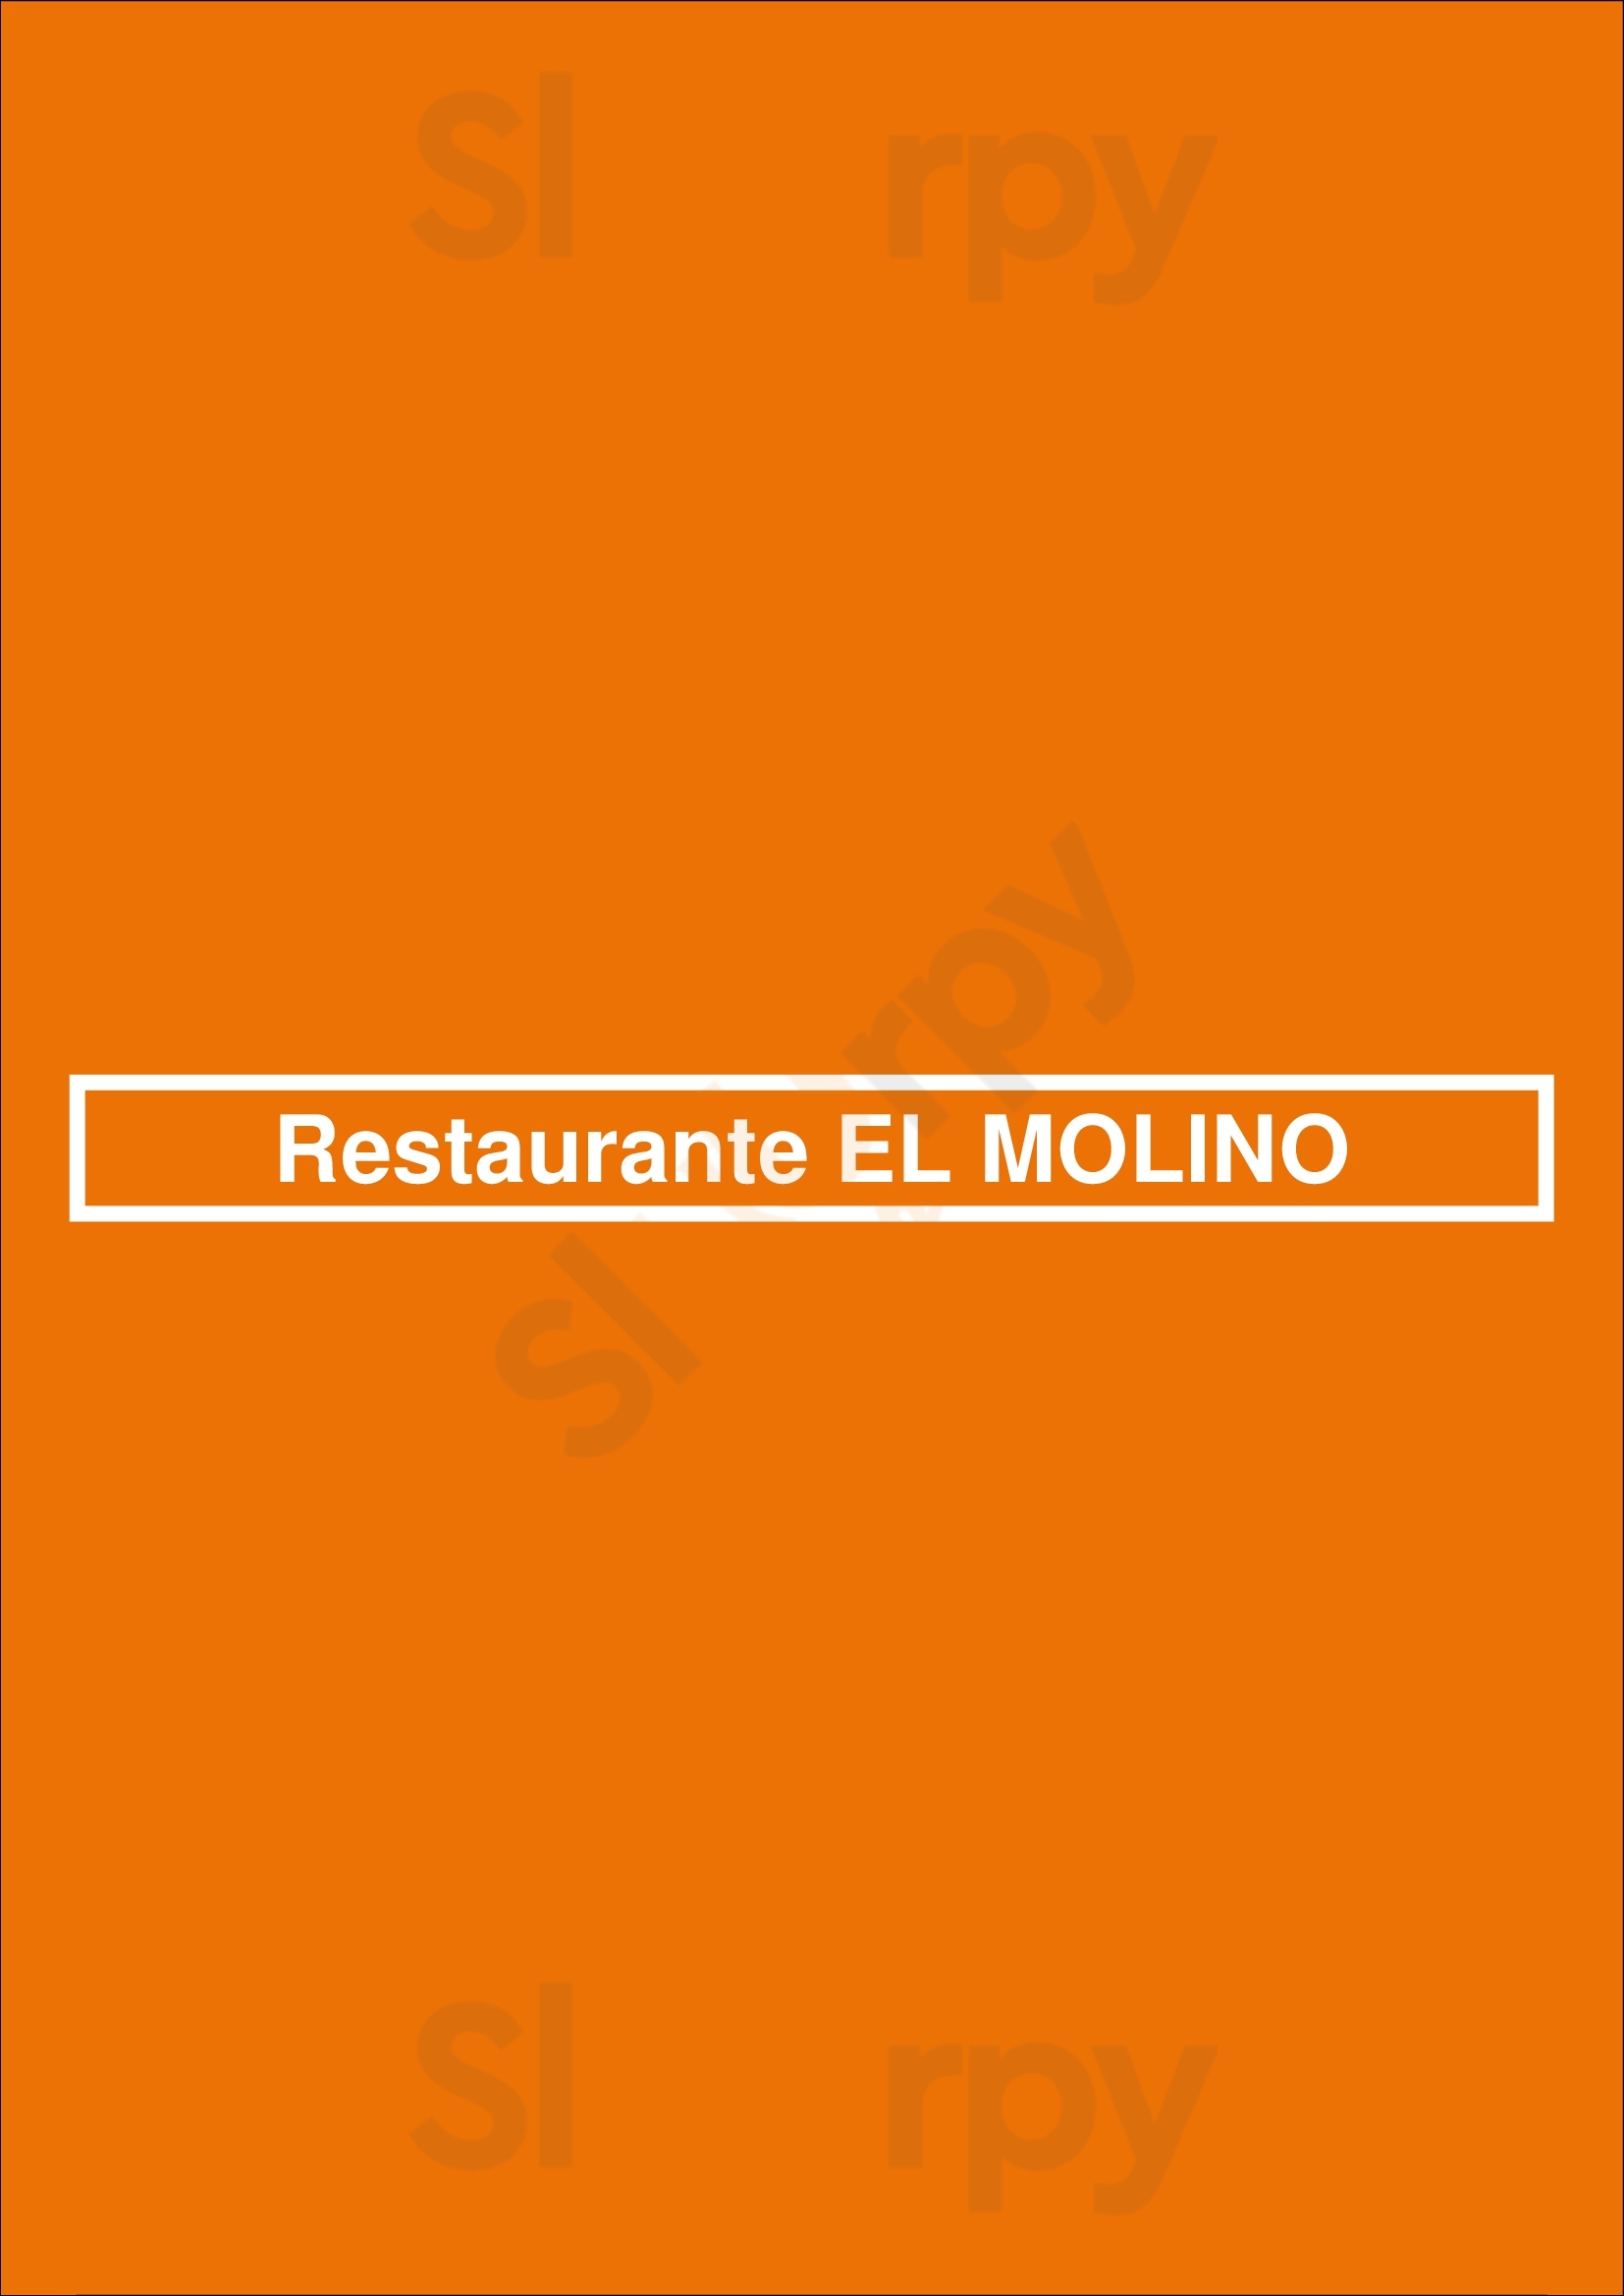 Restaurante El Molino Madrid Menu - 1